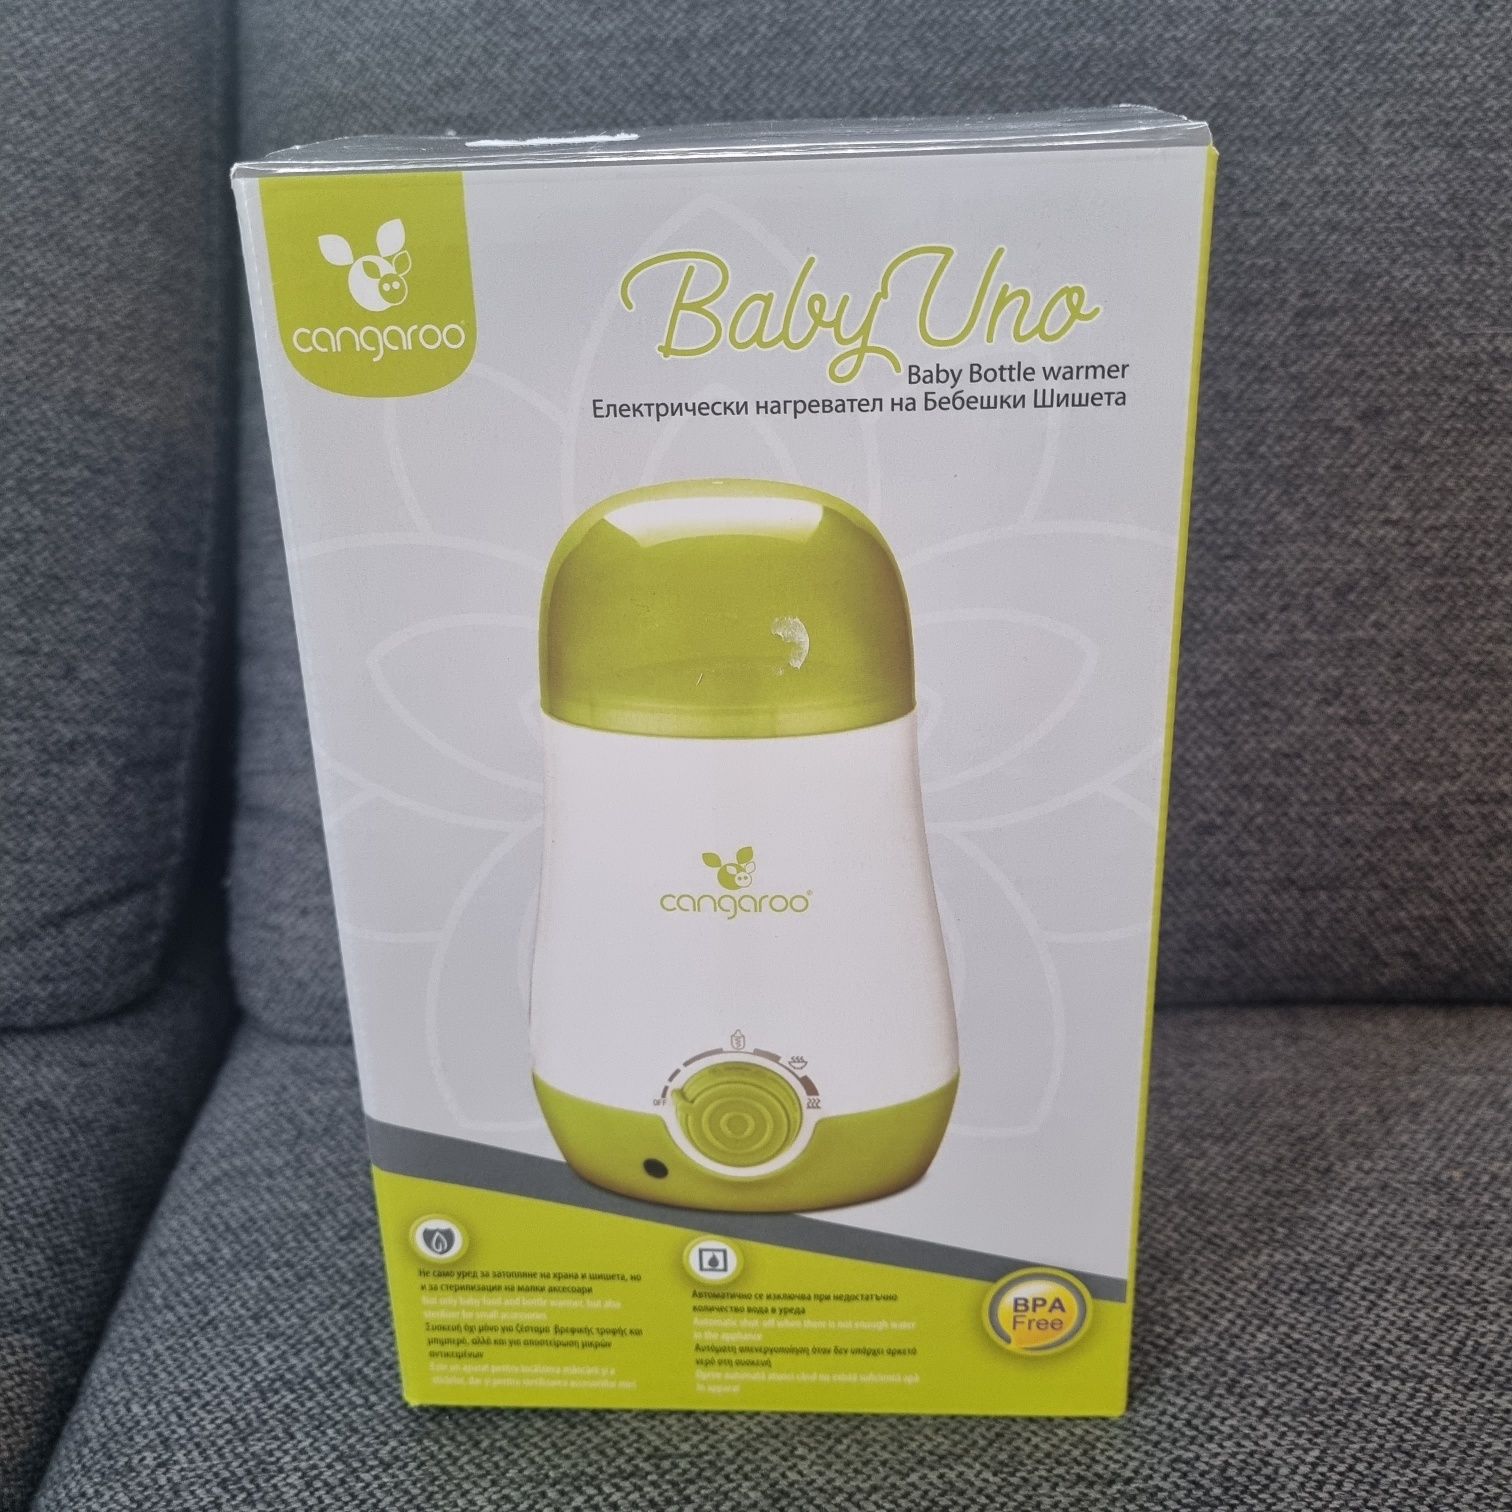 Електрически нагревател за бебешки шишета